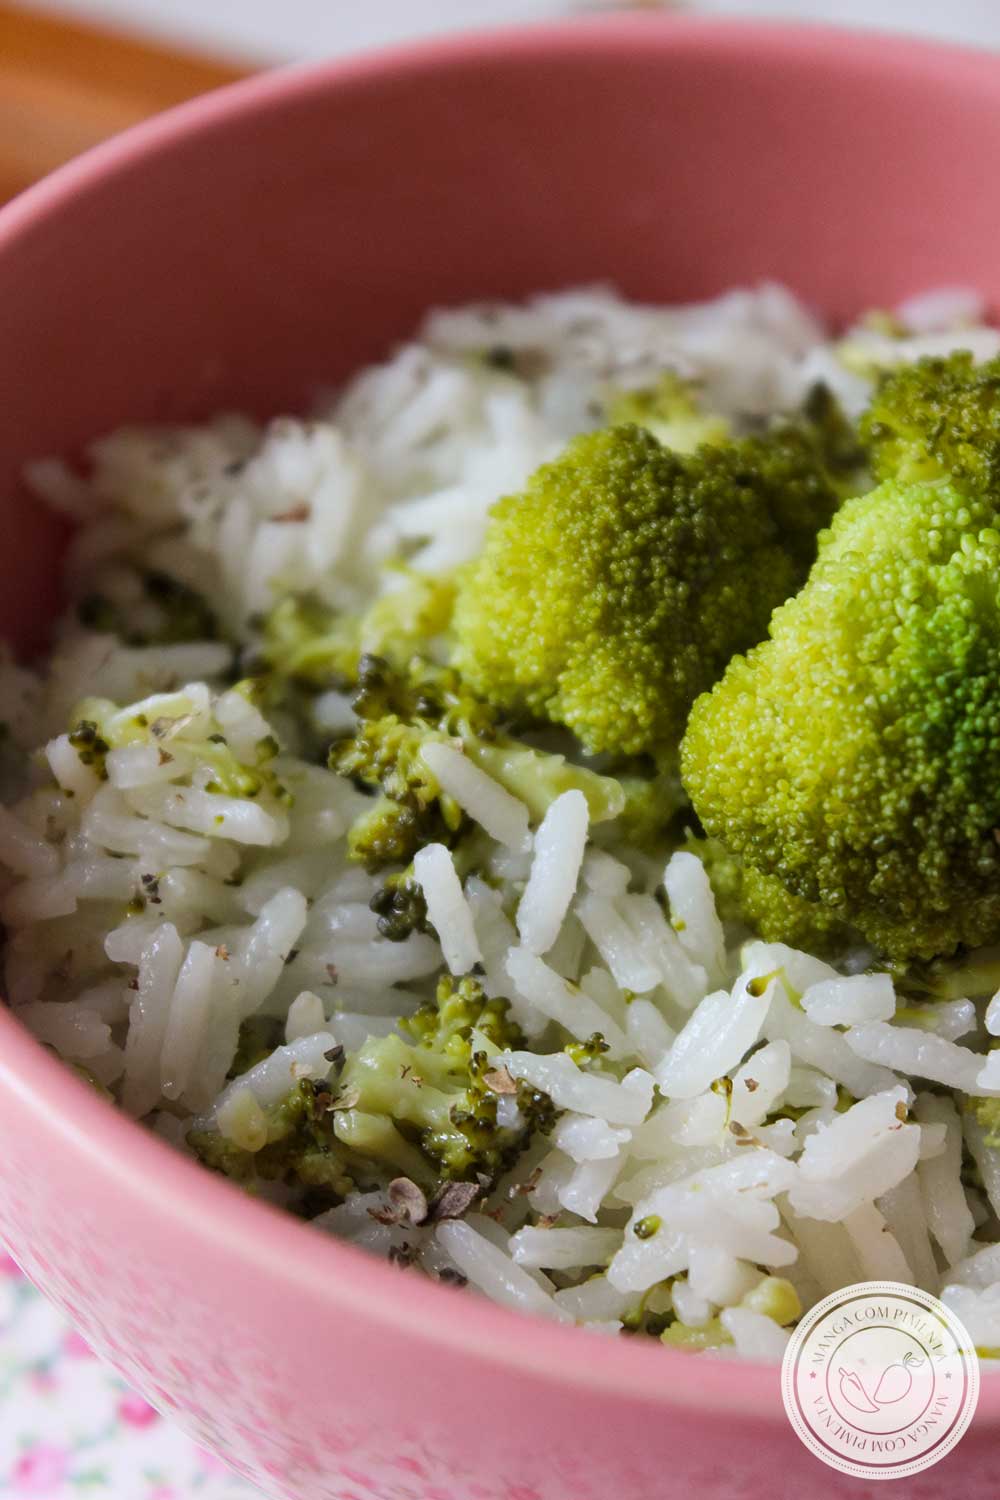 Receita de Arroz com Brócolis ao Limone - prepare esse arroz para a refeição da família dessa semana.